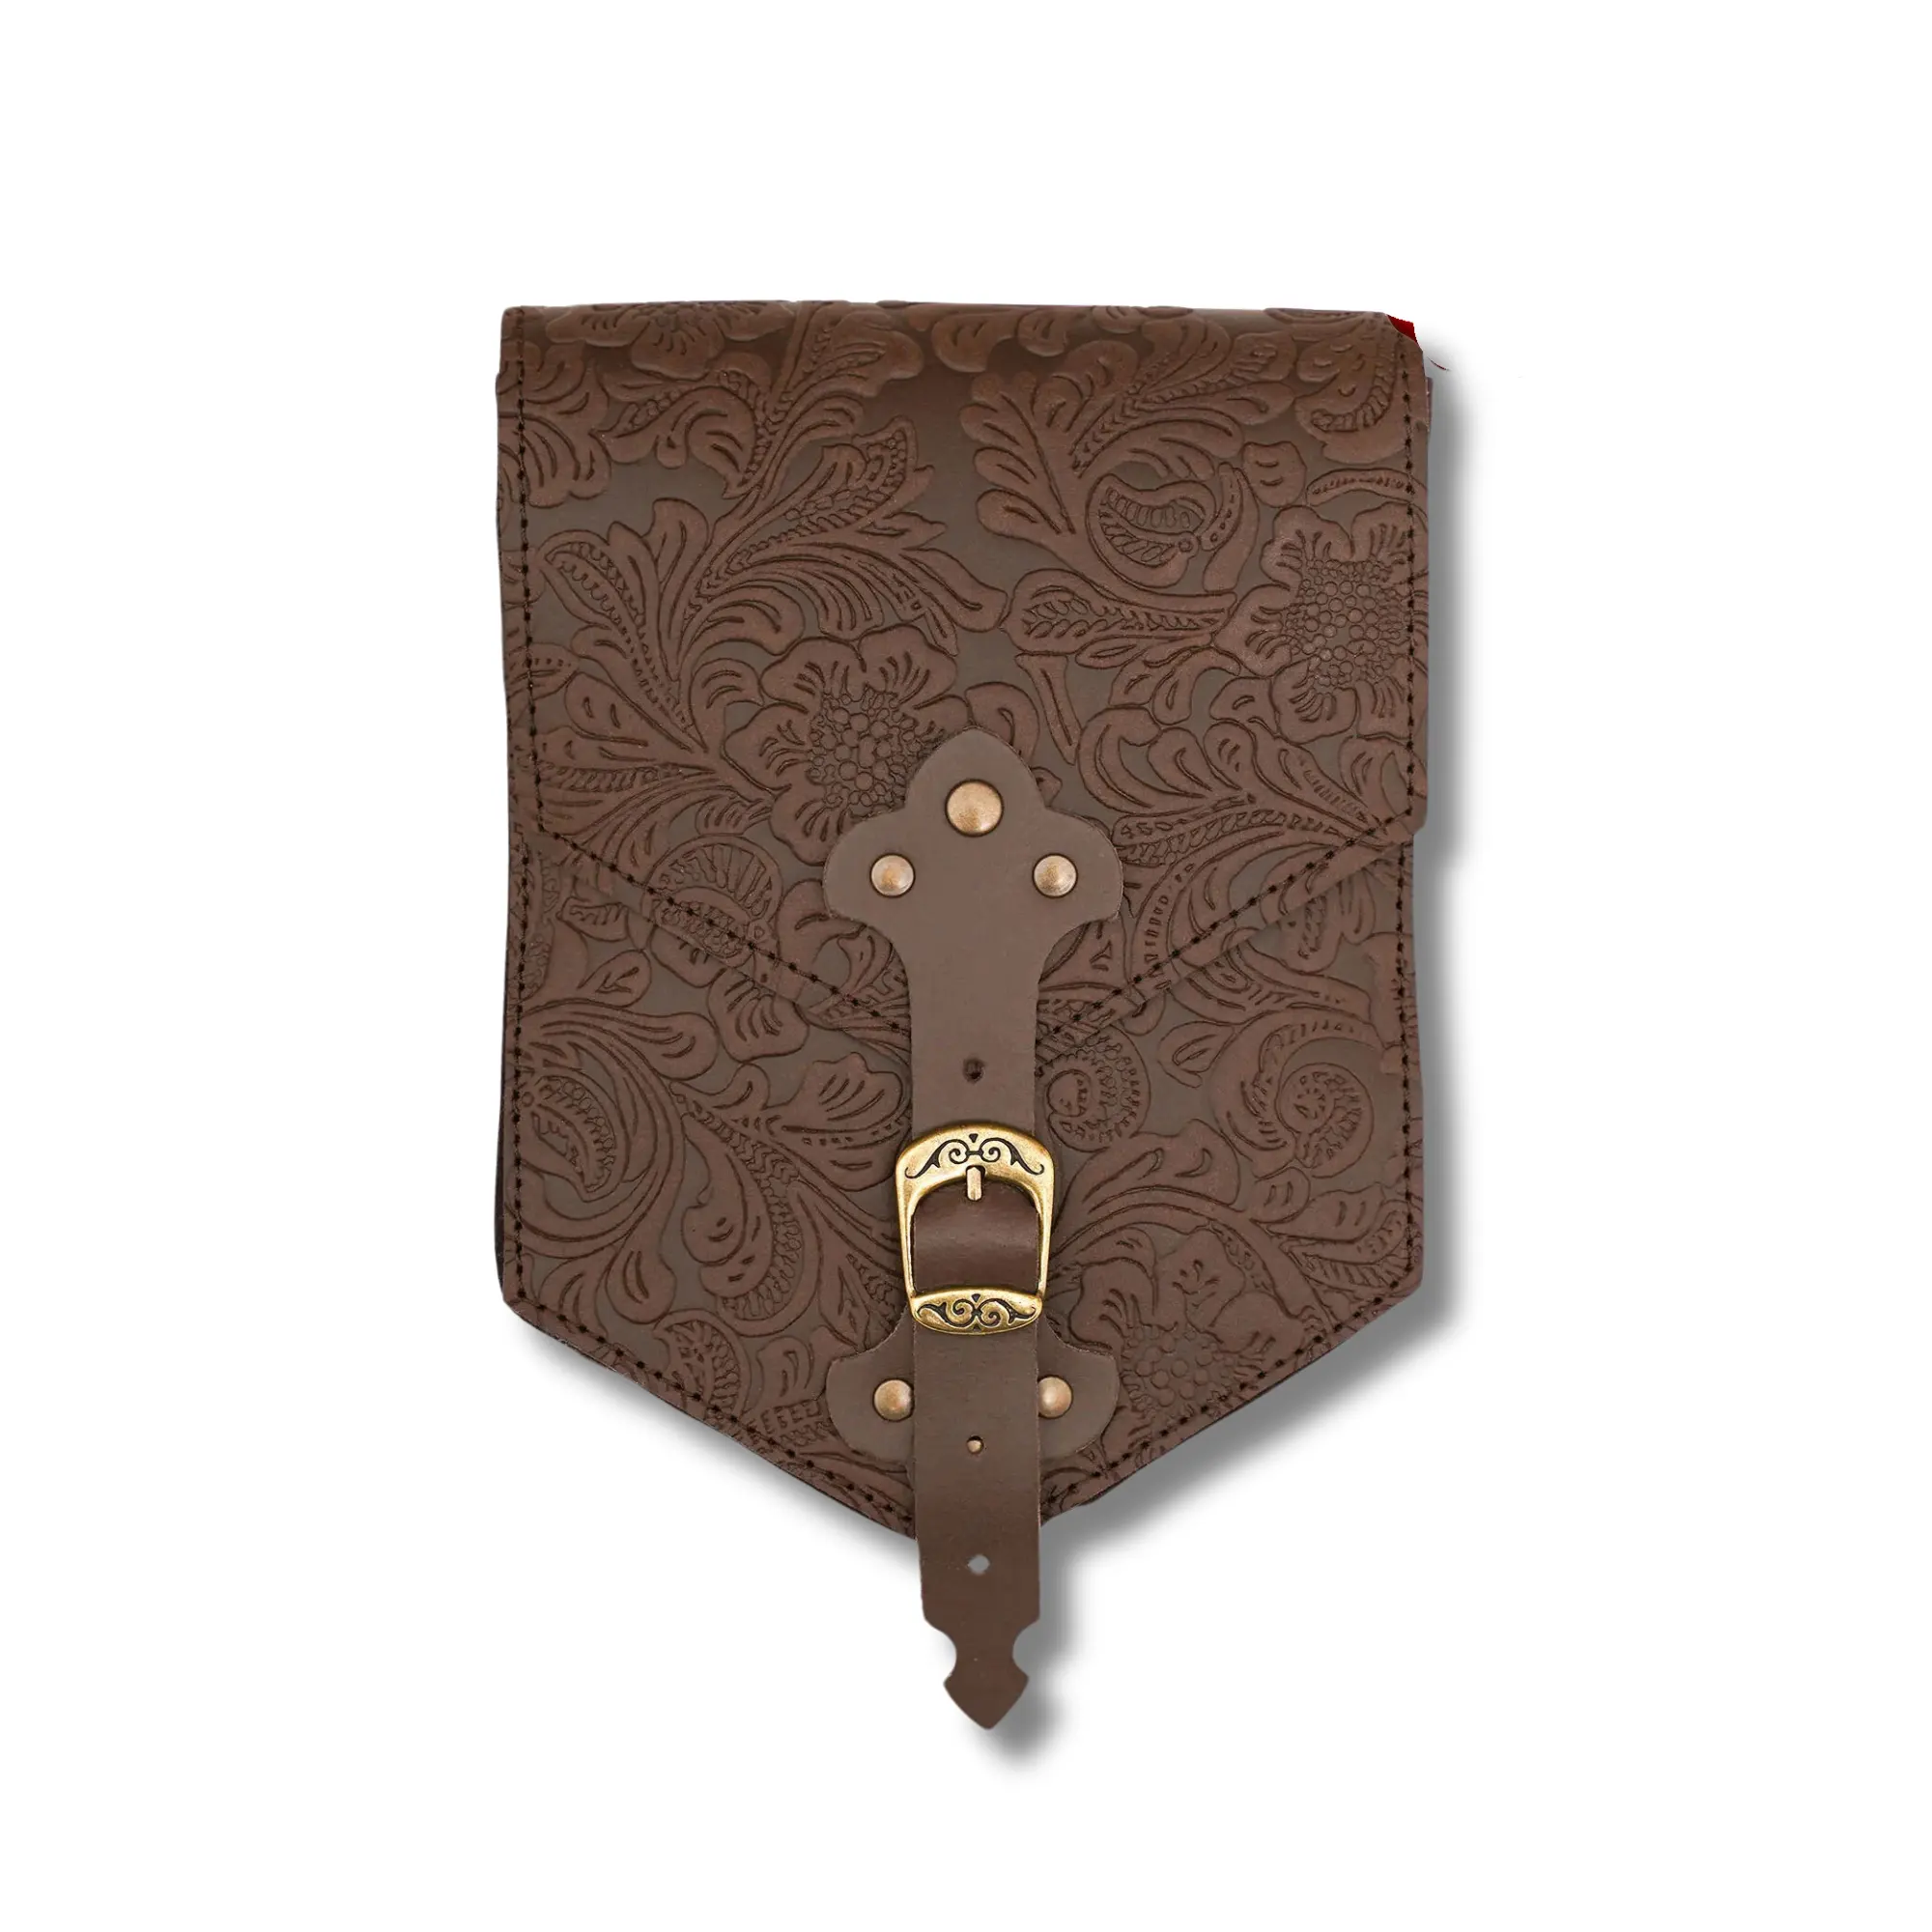 Unique leather Medieval Retro Waist Belt bag Handcrafted Viking leather shoulder bag Handcrafted Leather Messenger Bag